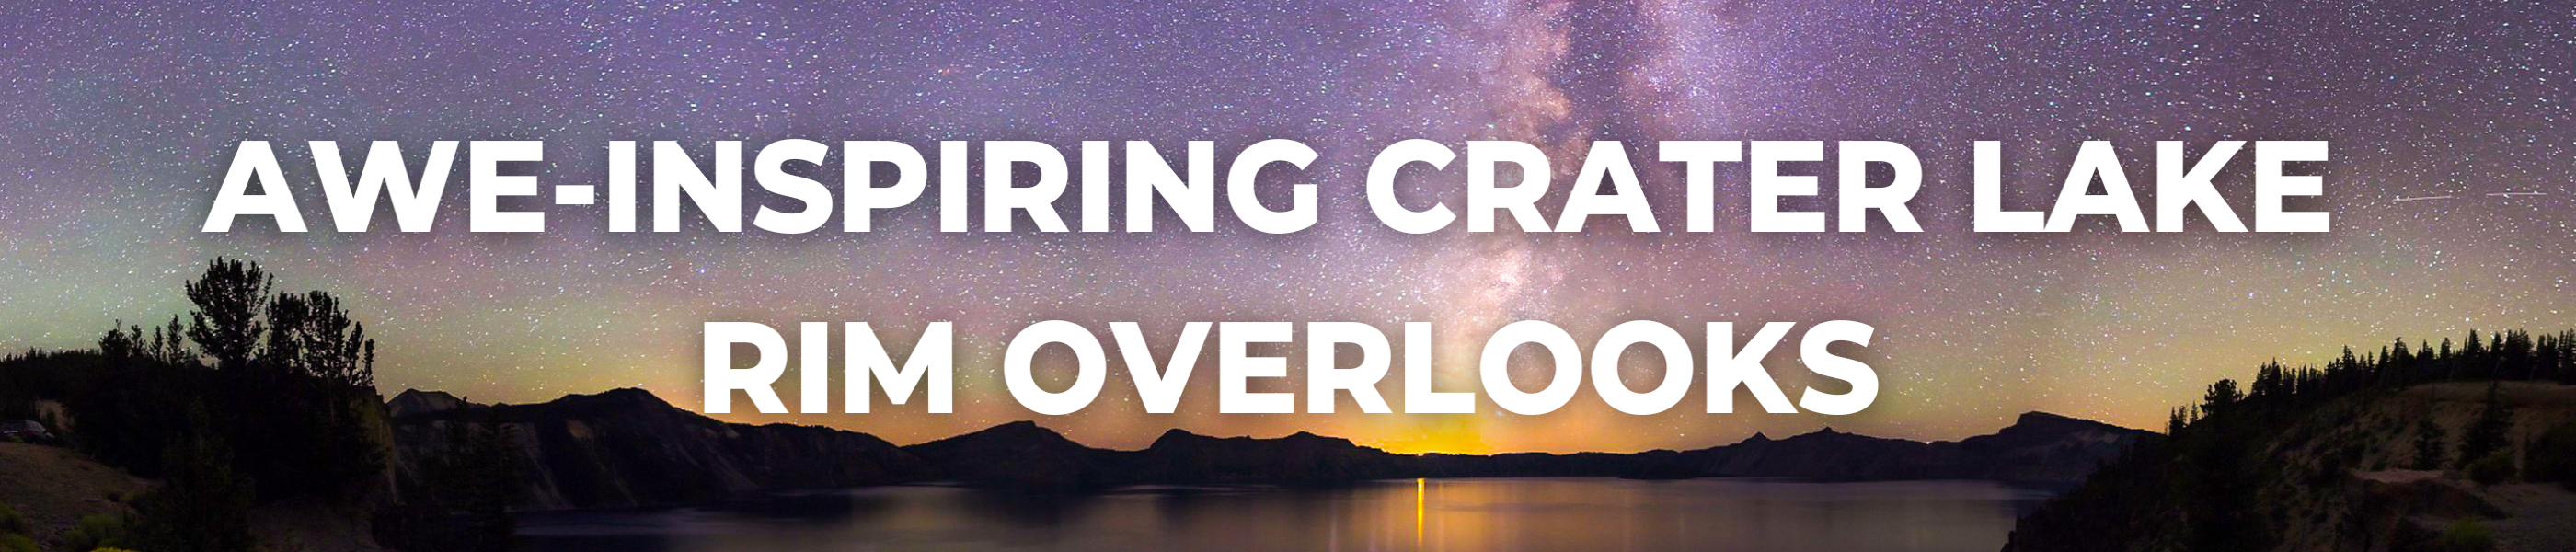 Awe-Inspiring Crater Lake Rim Overlooks Blog Header